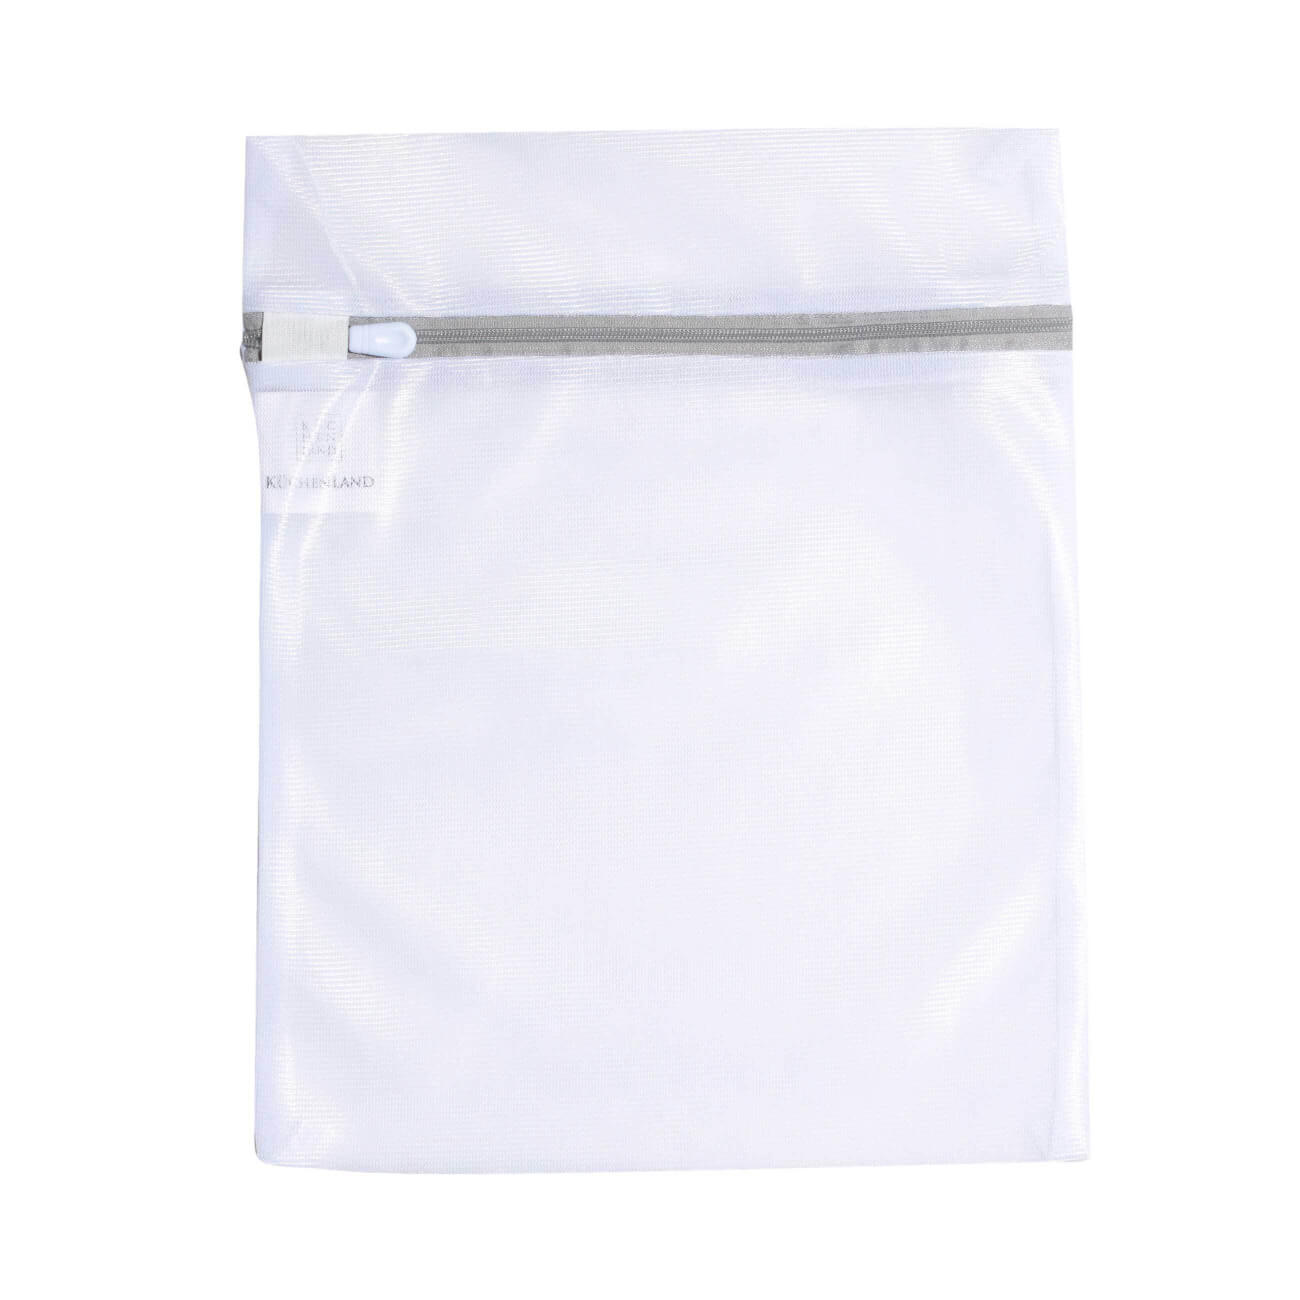 Мешок для стирки нижнего белья, 25х30 см, полиэстер, бело-серый, Safety plus мешок для стирки нижнего белья 25х30 см полиэстер бело серый safety